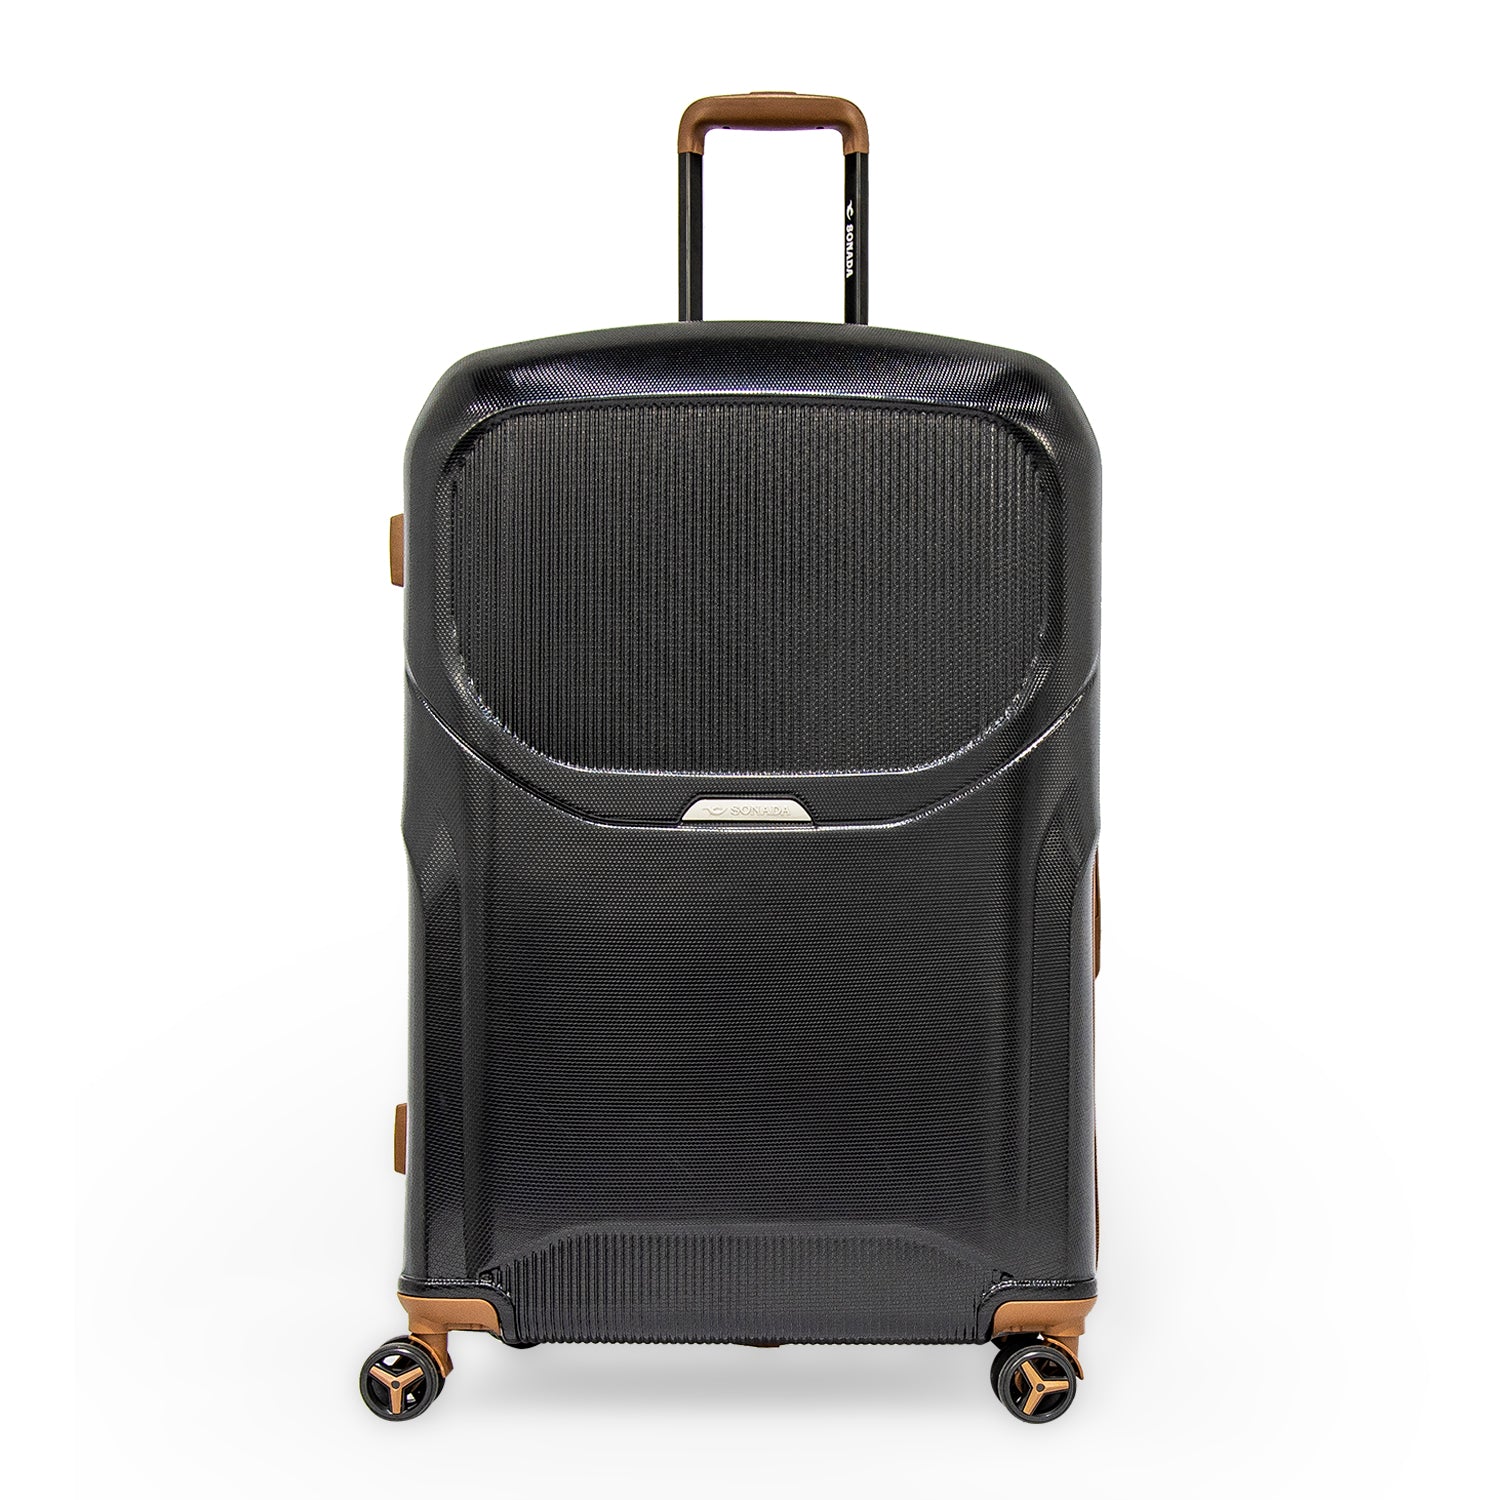 Sonada Upright Luggage Expandable Hardside Suitcase Check In Black